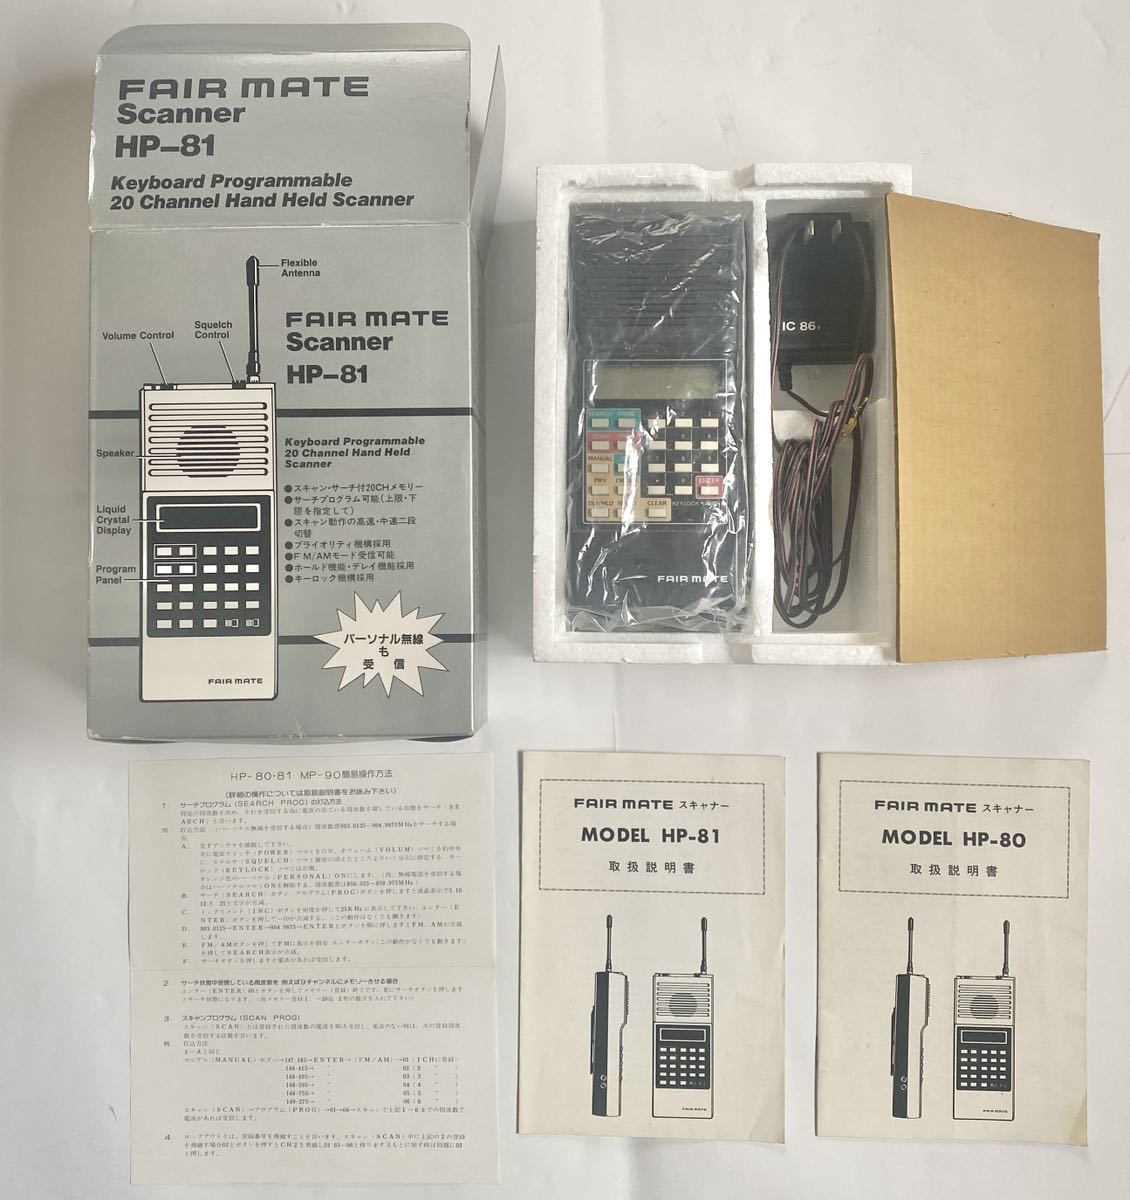 FAIR MATE HP-81 беспроводной приемник руководство пользователя вид оригинальная коробка есть б/у товар сделано в Японии fea Mate Radio receiver made in Japan